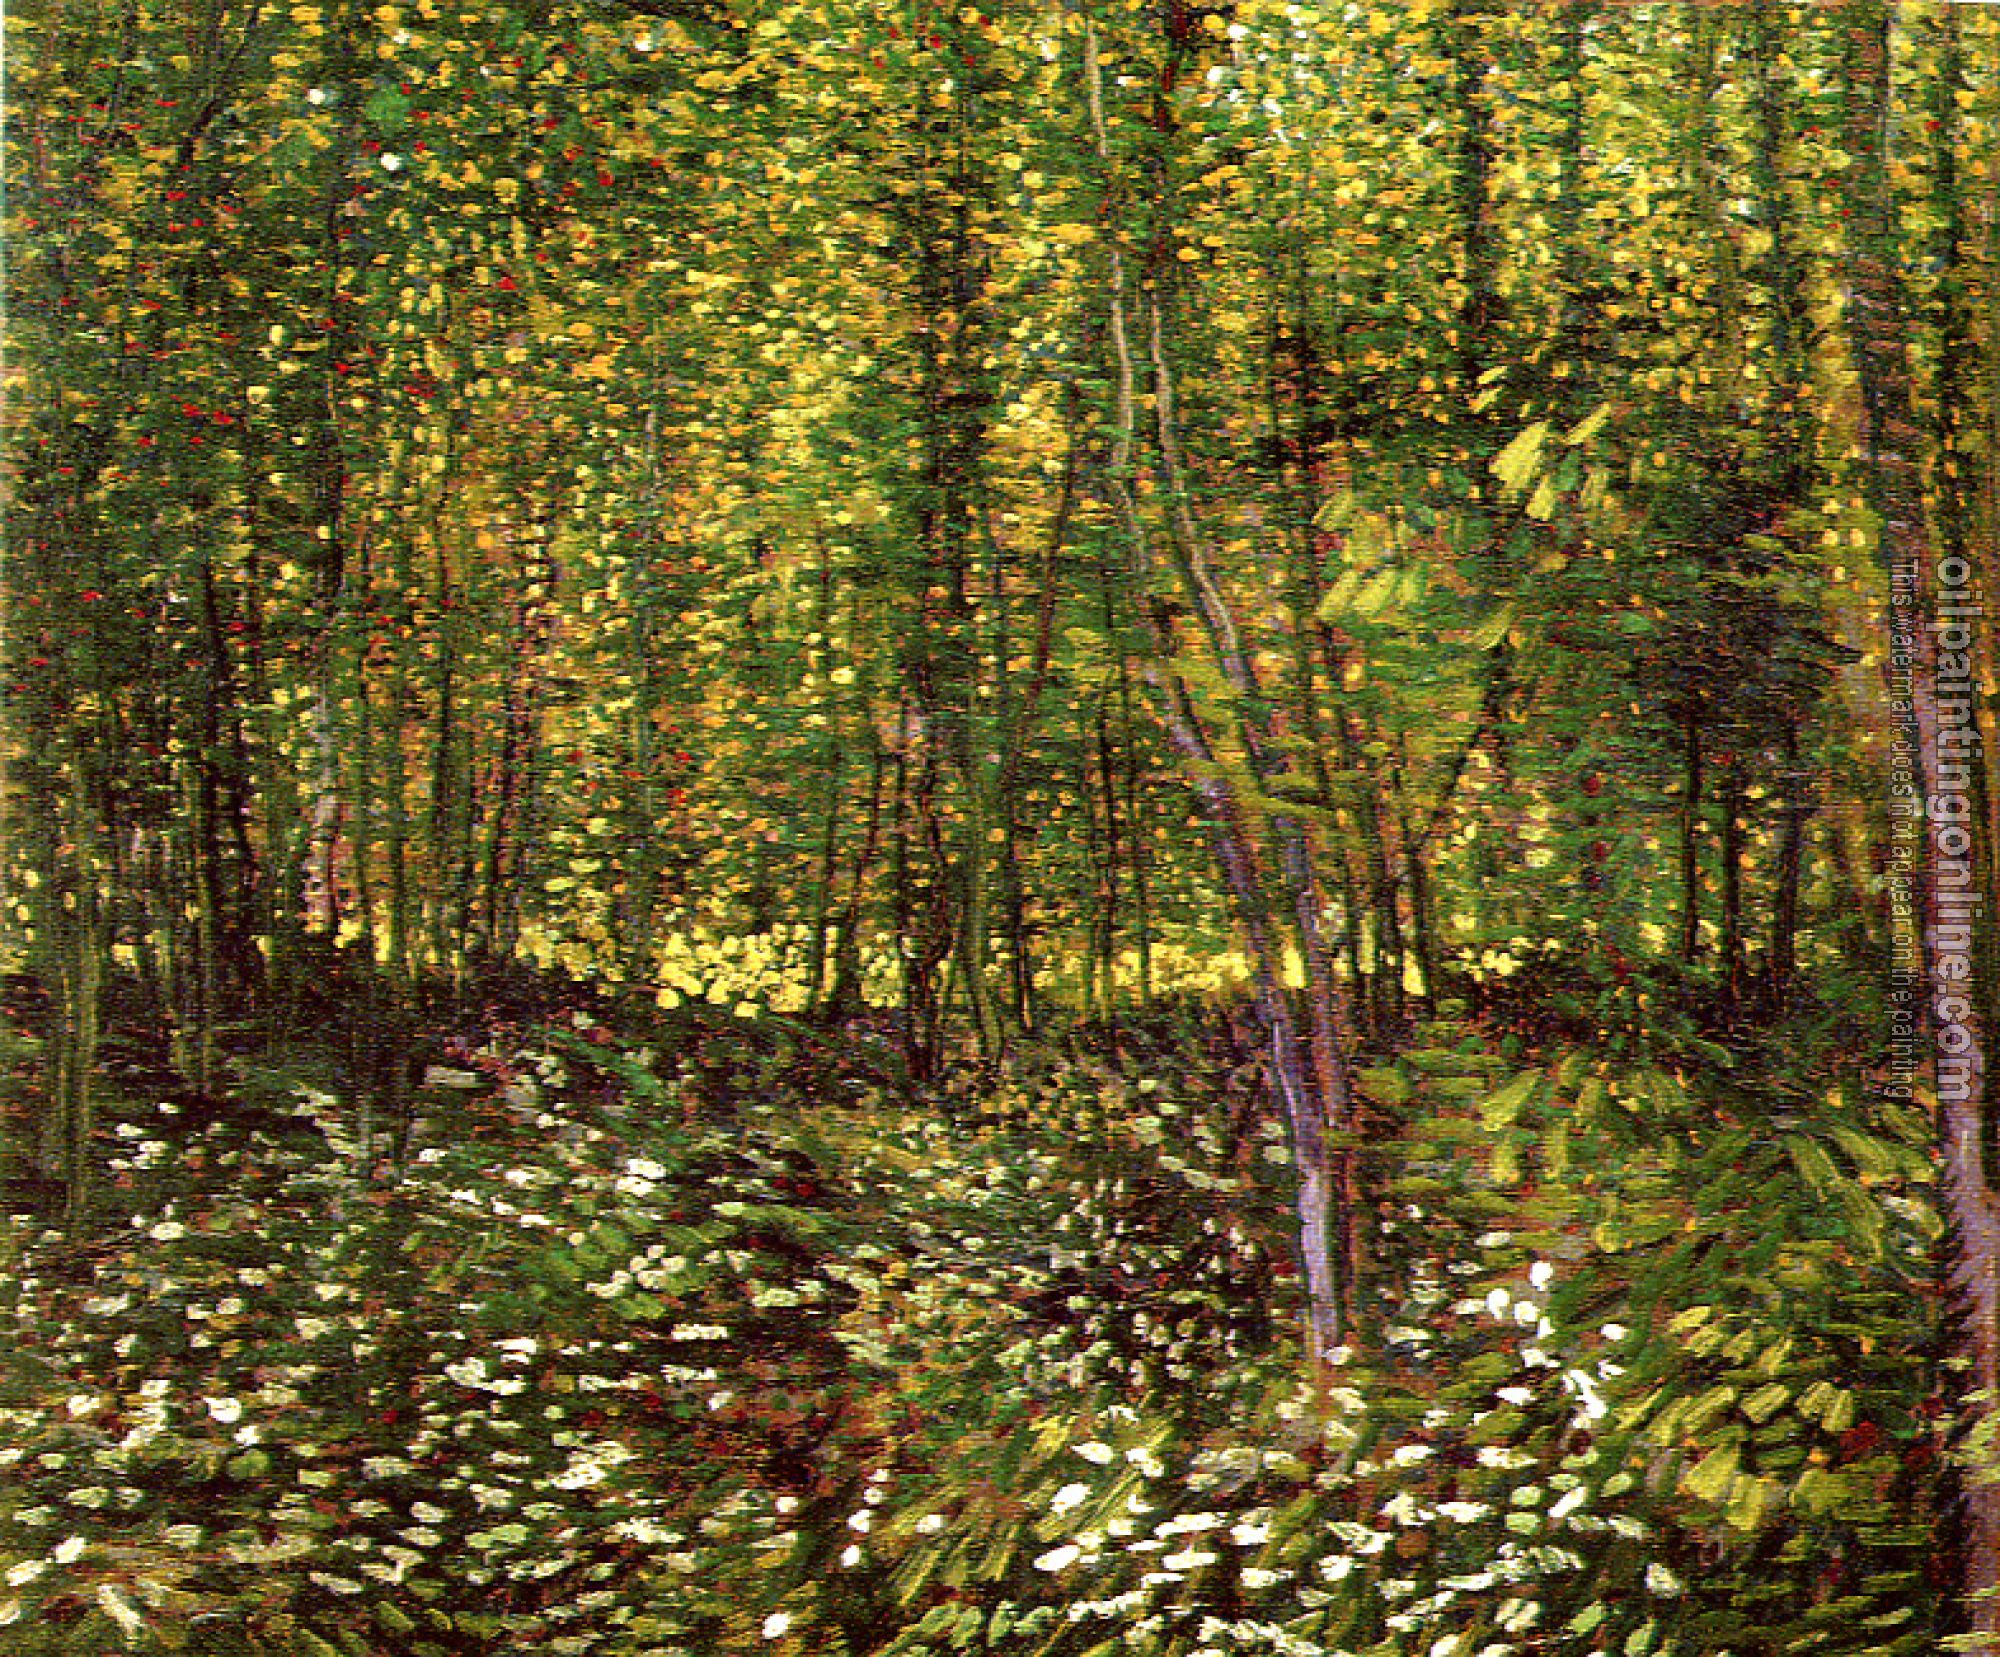 Gogh, Vincent van - Undergrowth